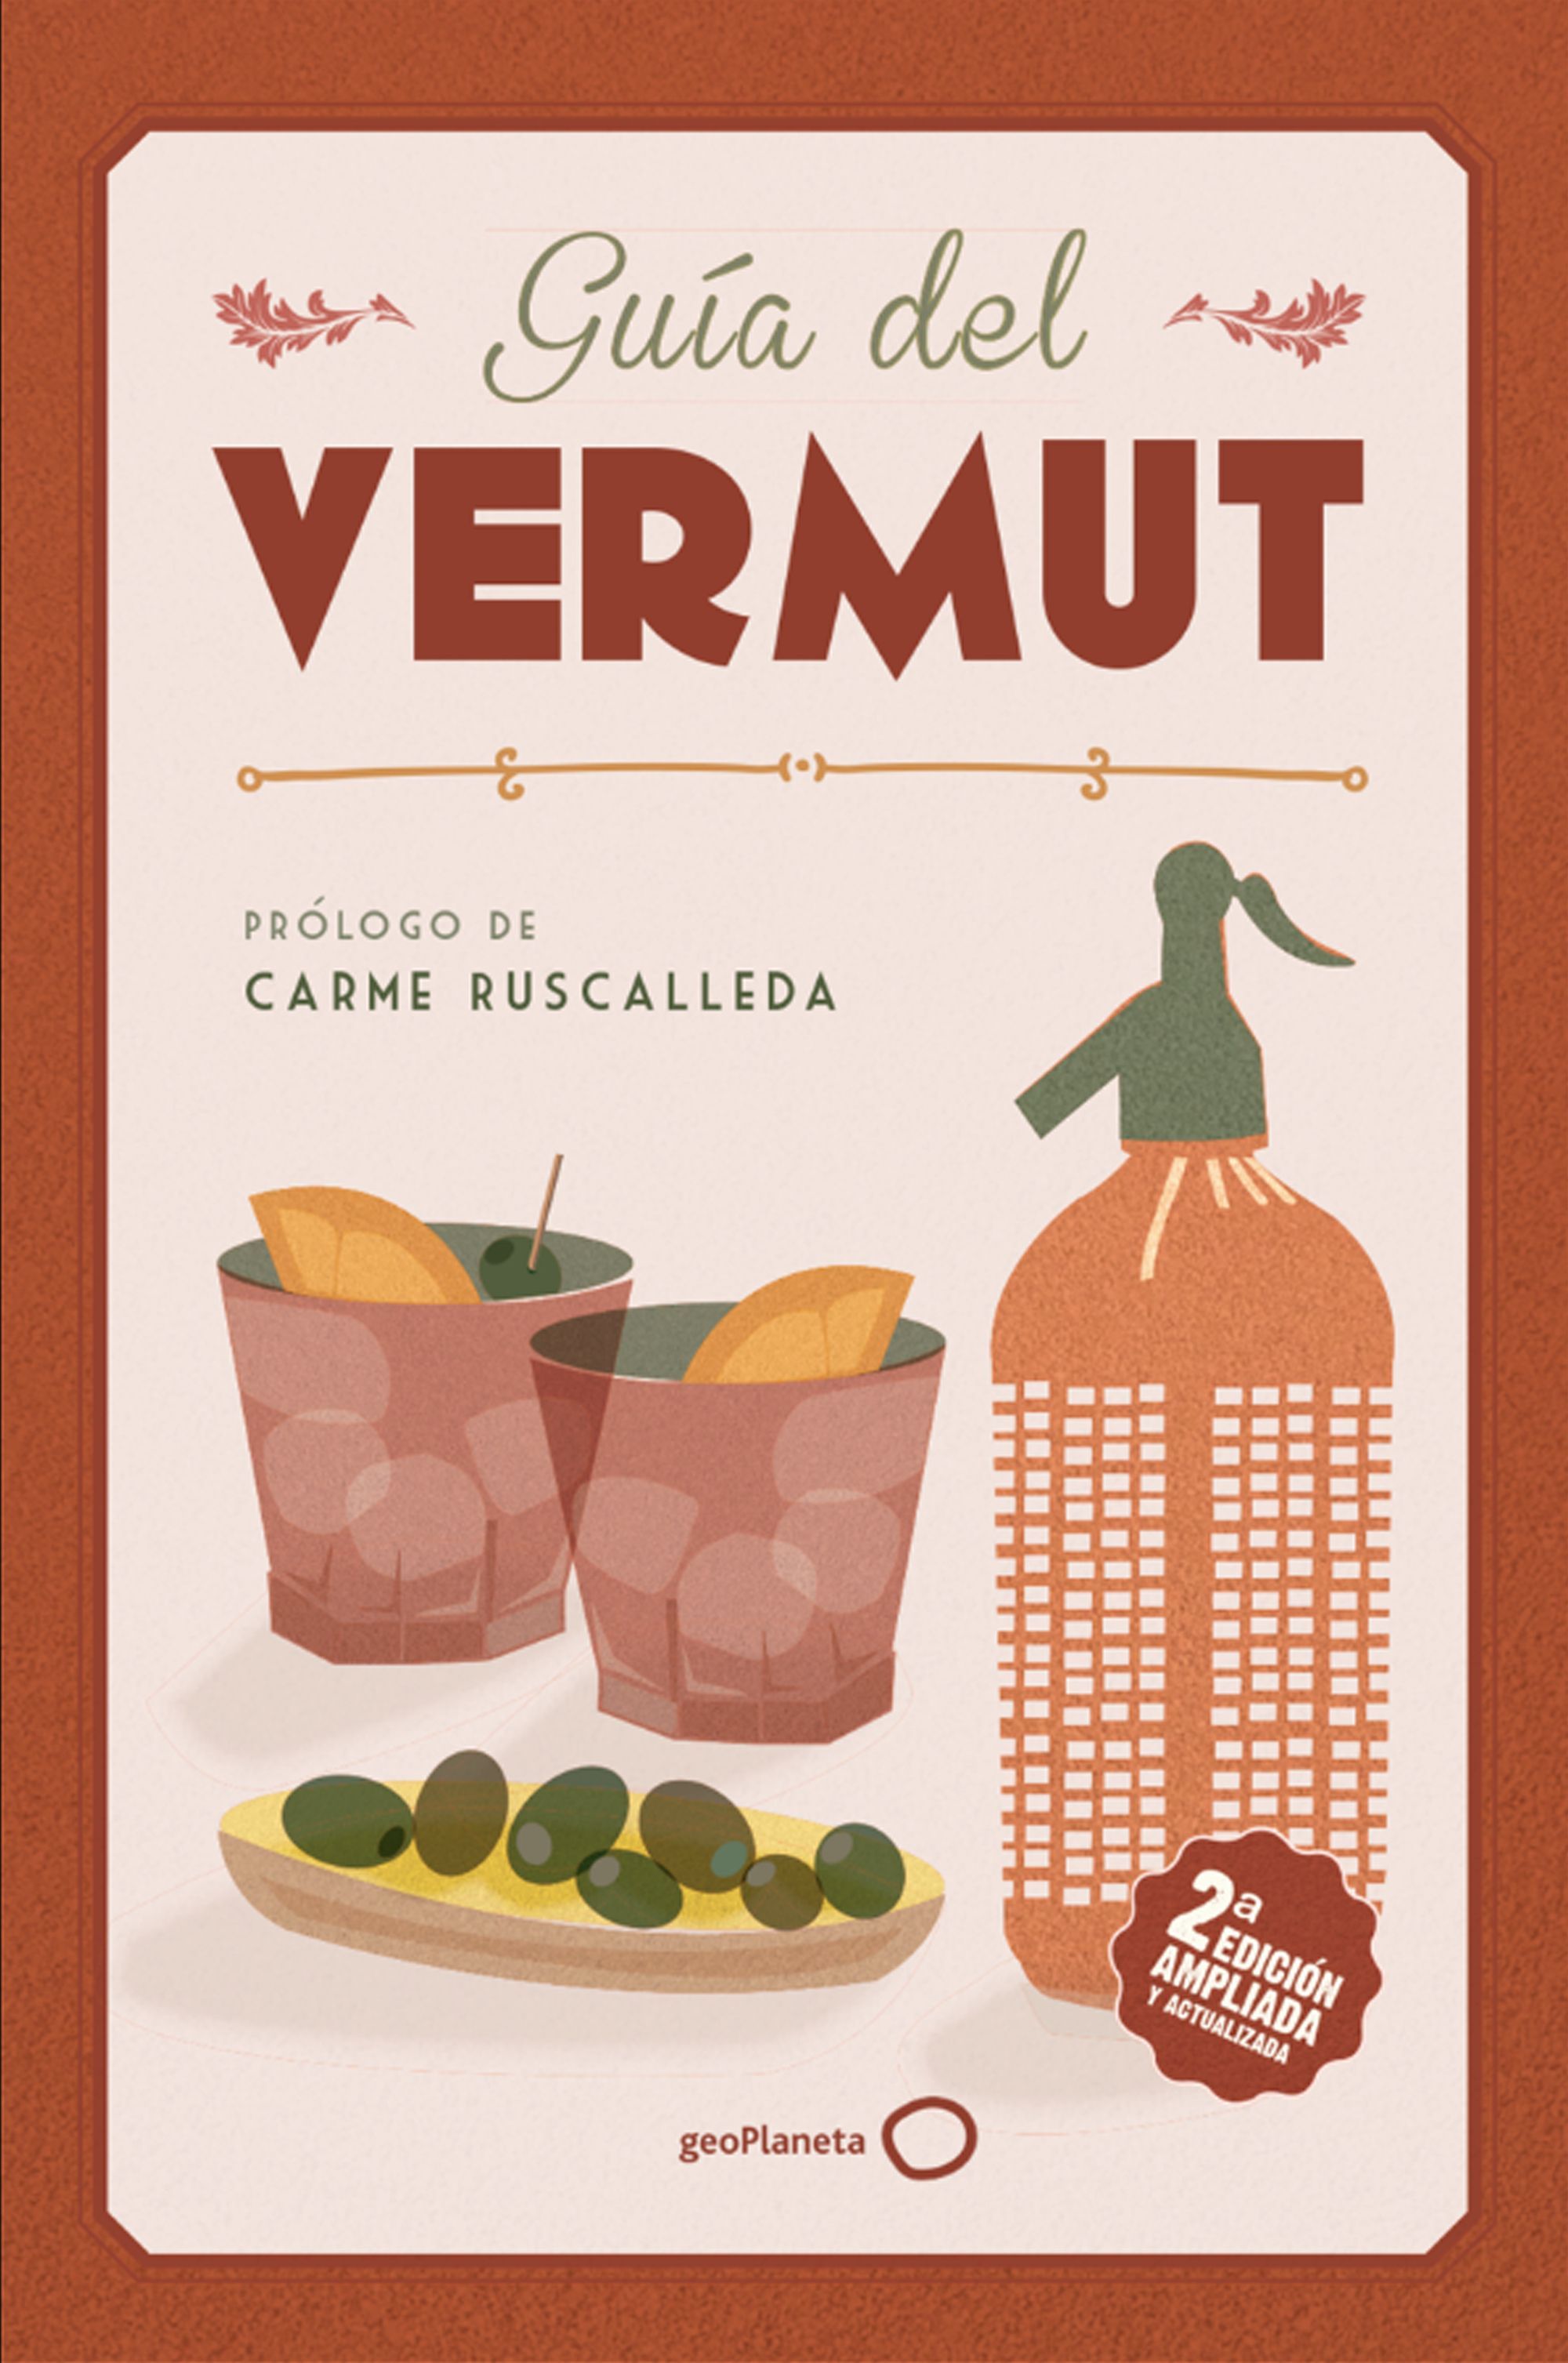 Una guía sobre el vermut, el aperitivo que nunca se pasa de moda (Ed. GeoPlaneta)